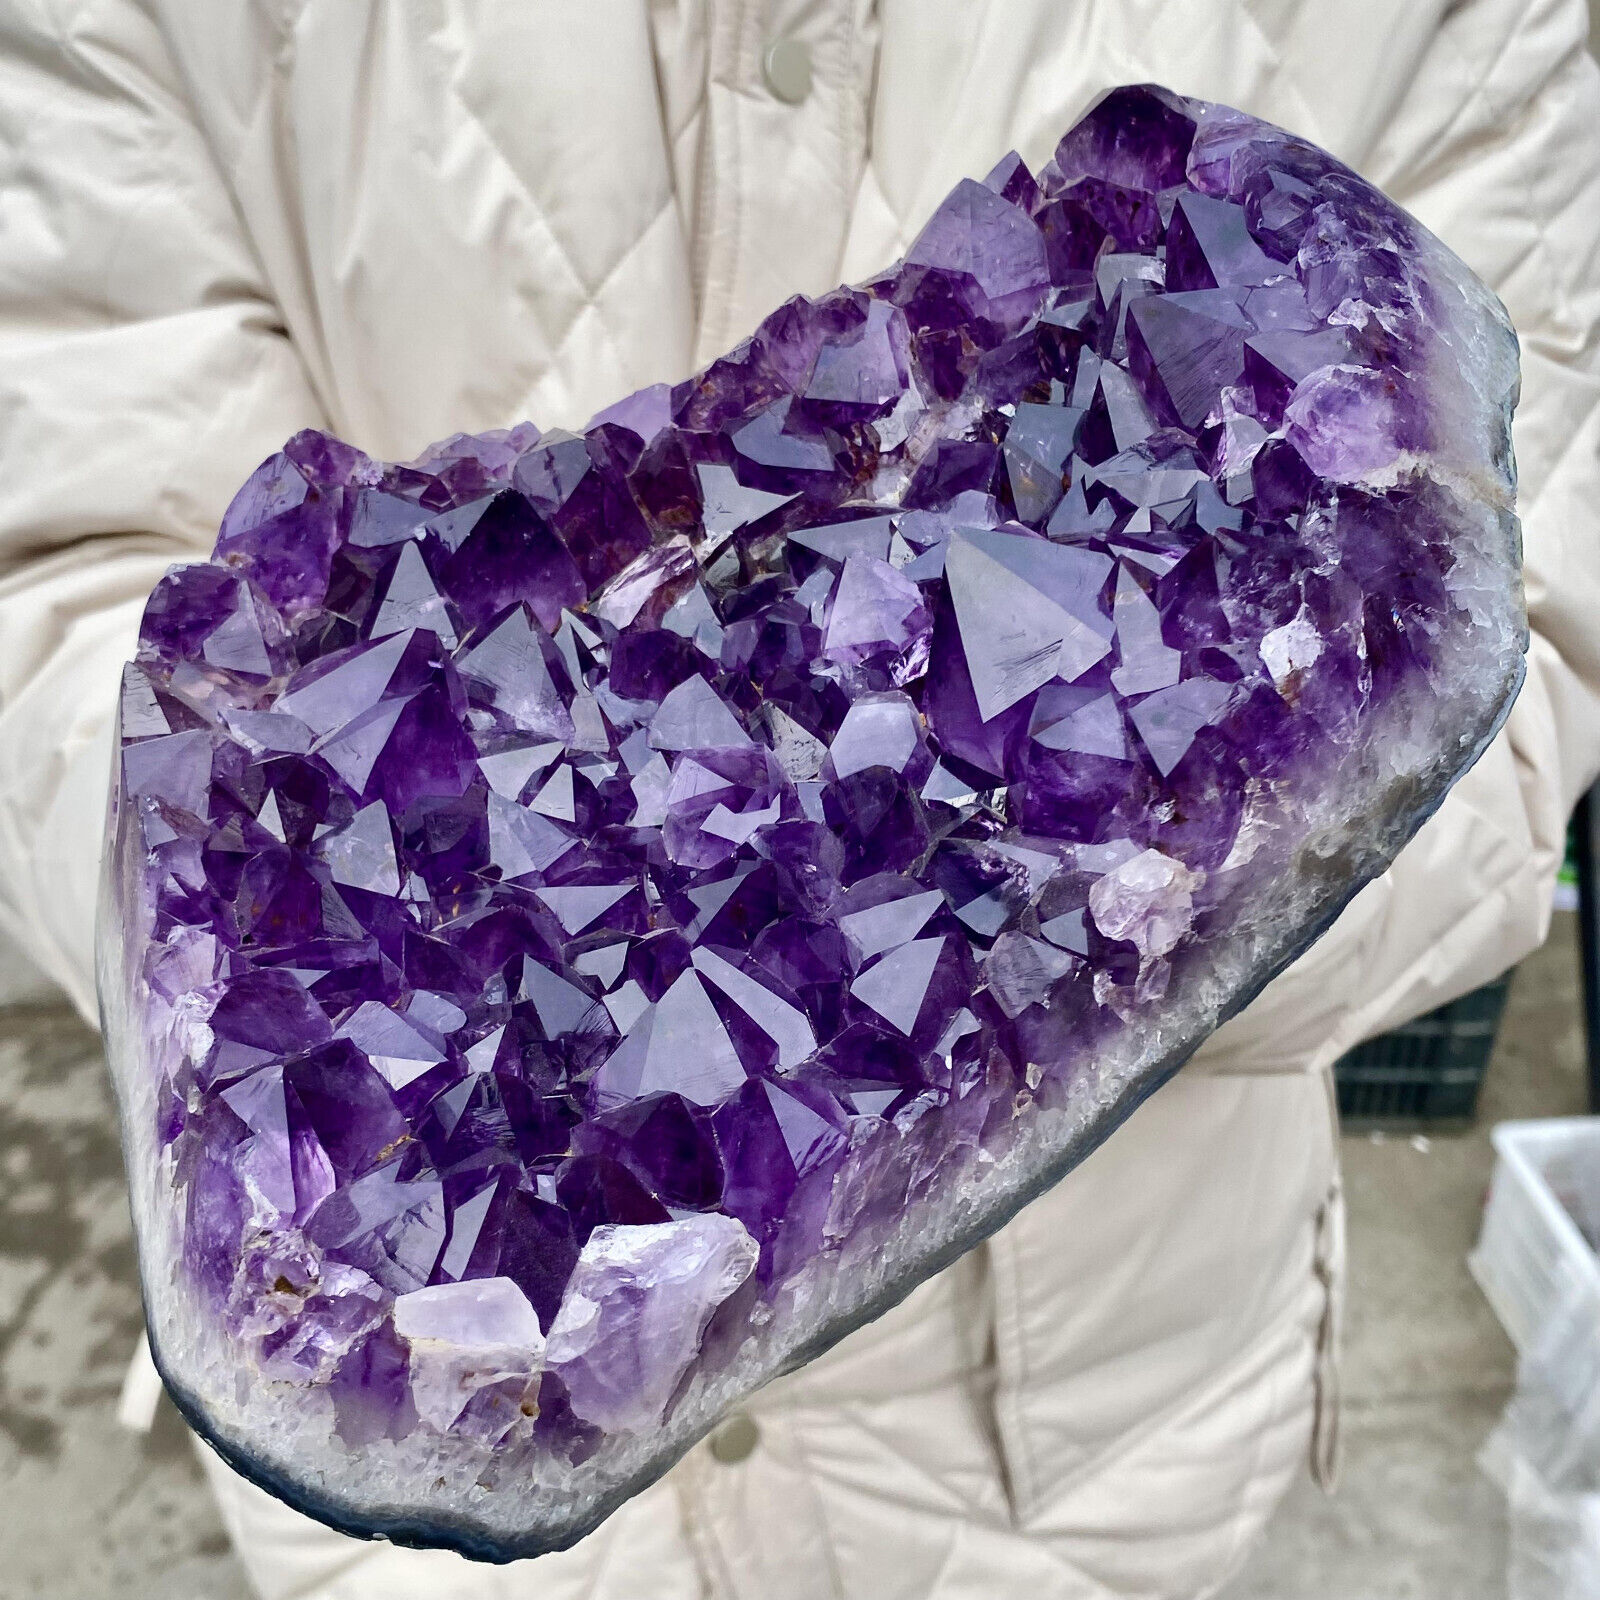 7.71LB Natural Amethyst geode quartz cluster crystal specimen energy healing